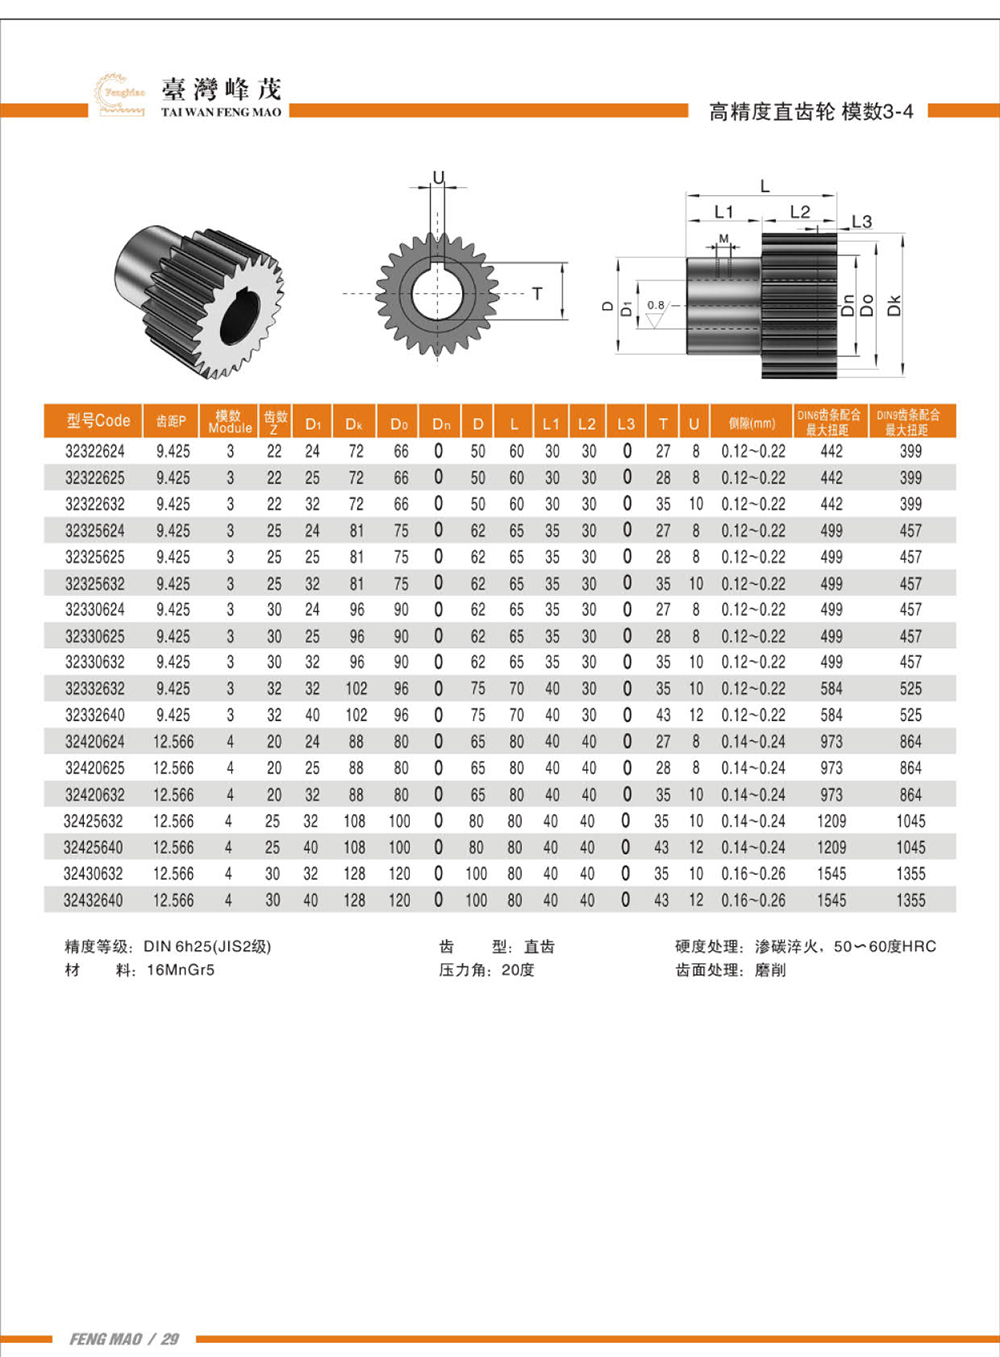 高精度直齒輪模數3-4產品參數